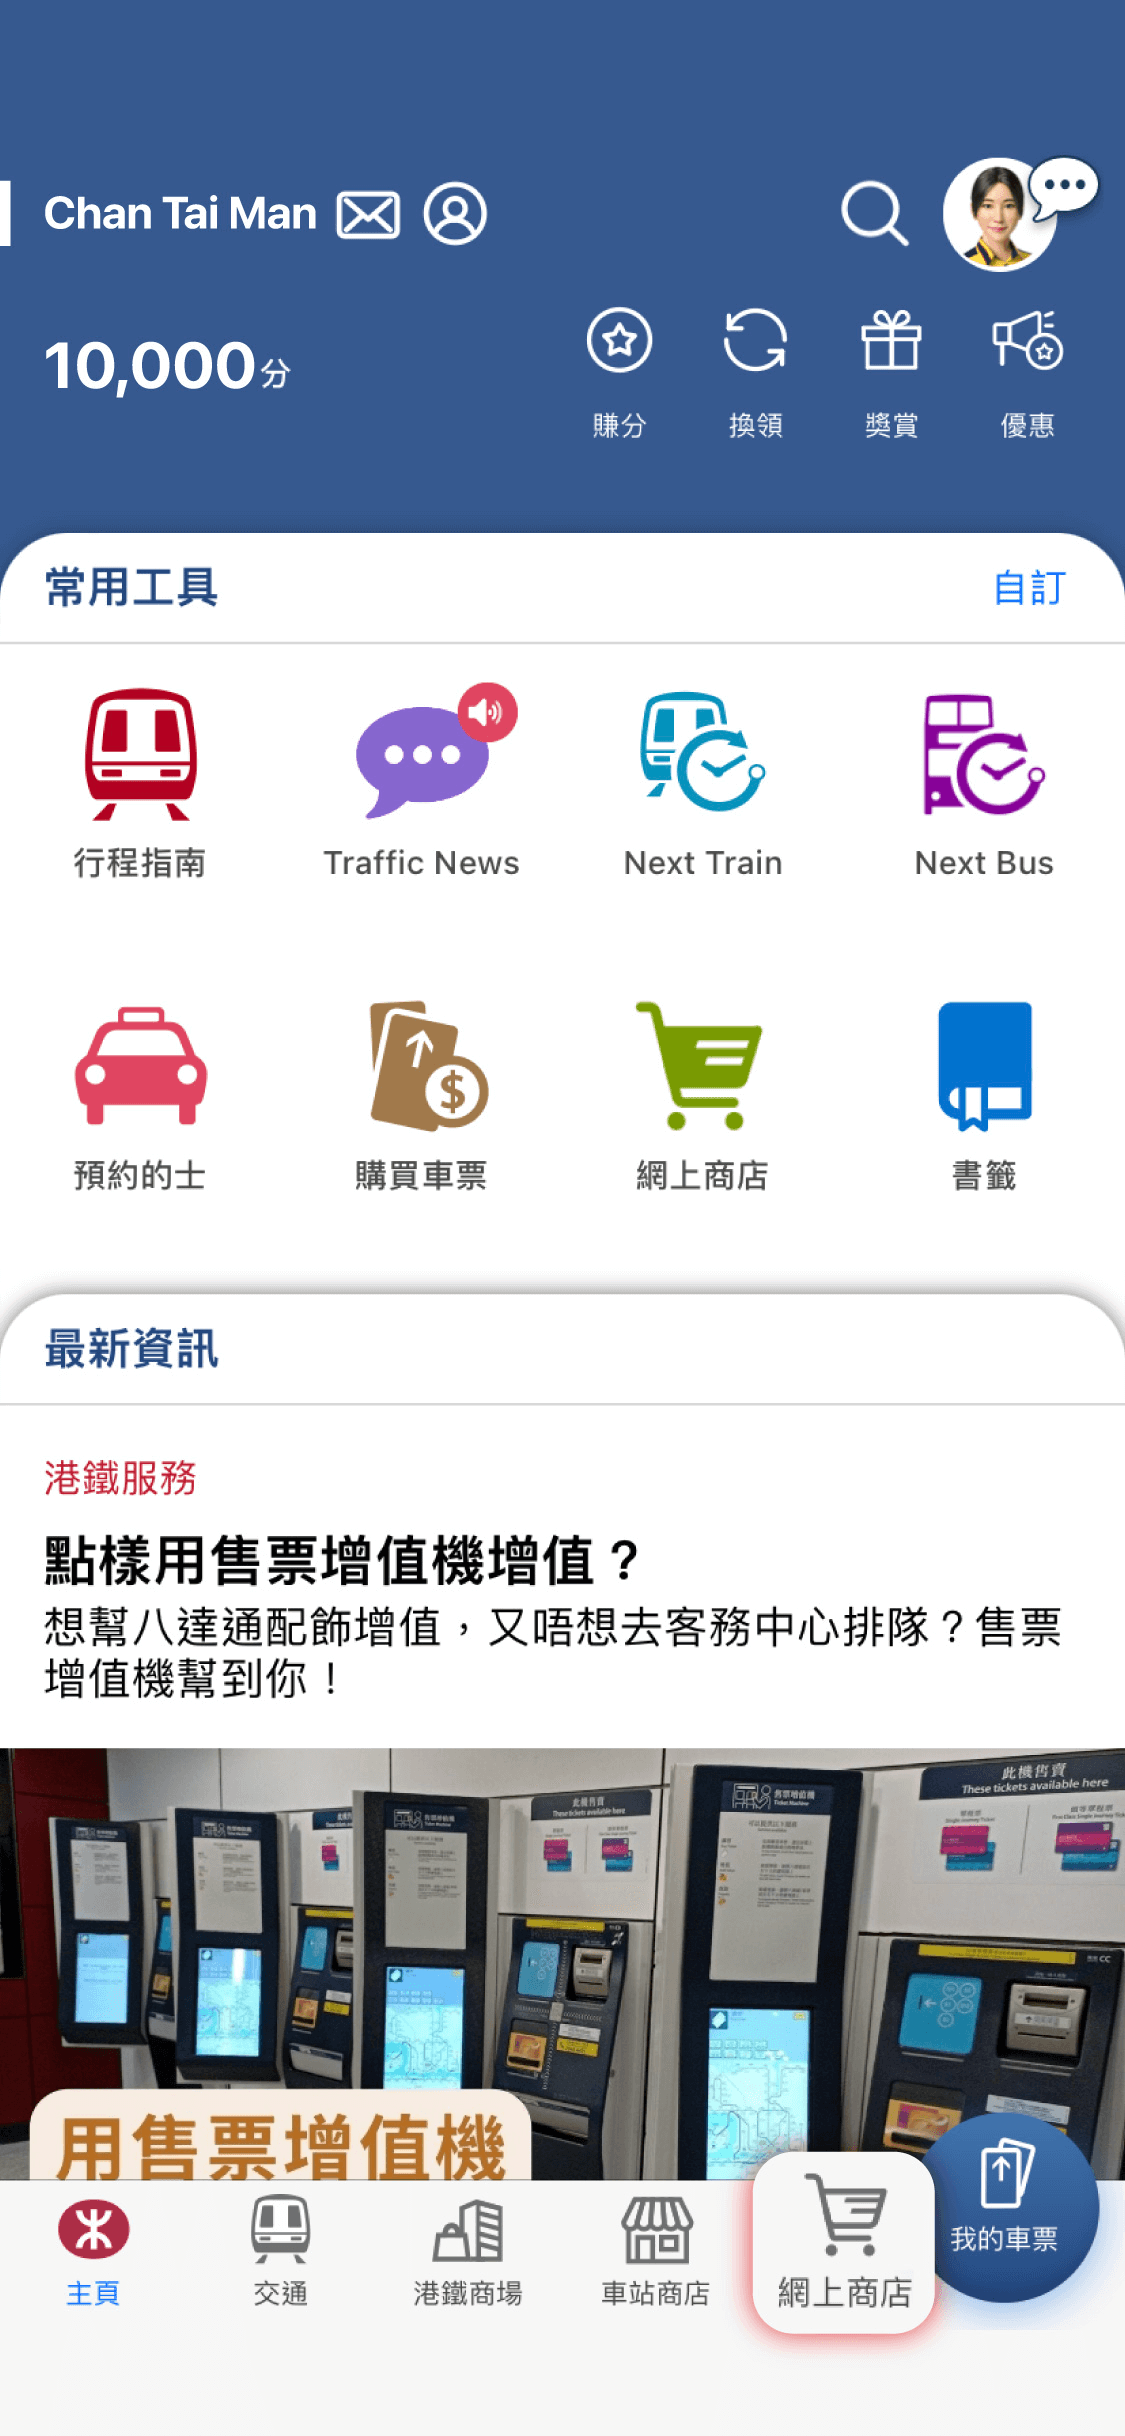 登入MTR Mobile 賬戶後，點選「網上商店」